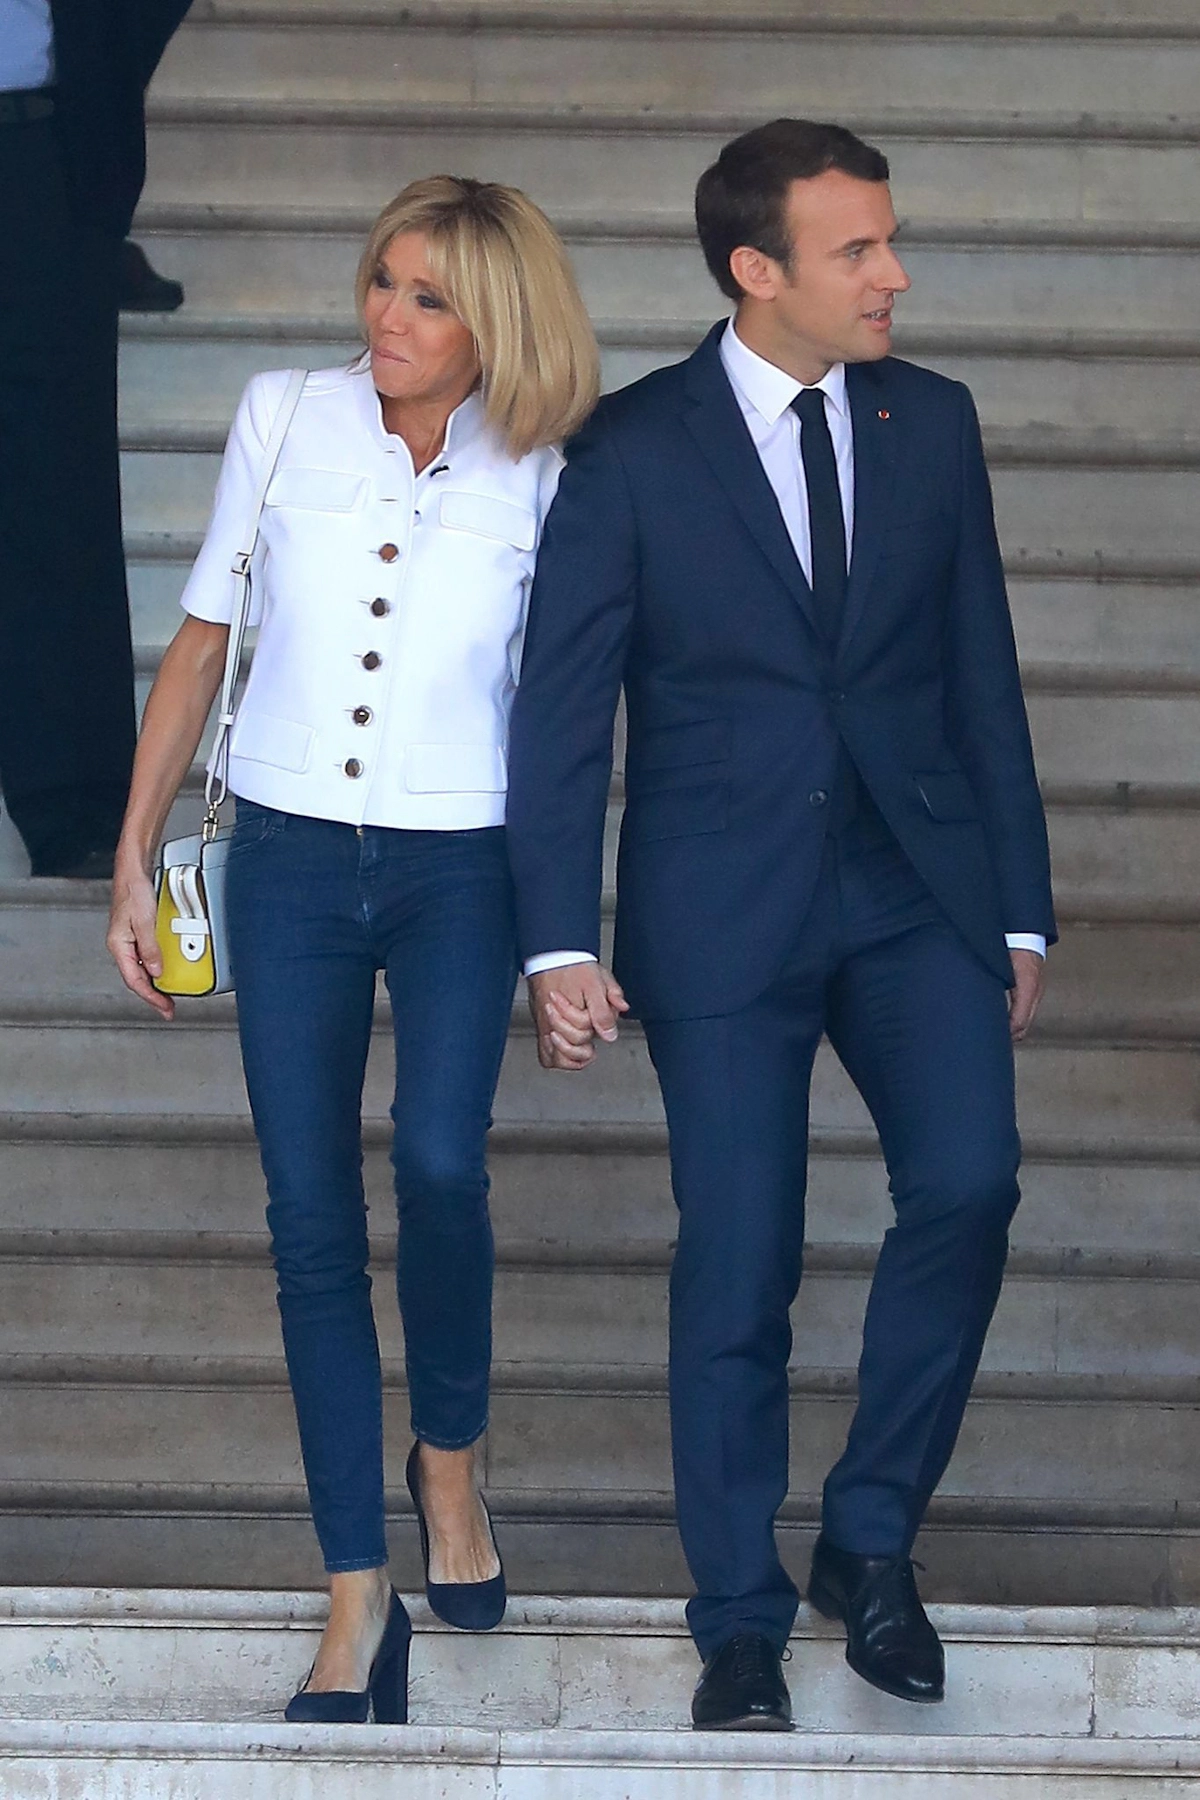 brigitte macron main dans la main avec son mari mais regardant dans des dire rions opposees habillee en jeans avec des talons et veste blanche courte